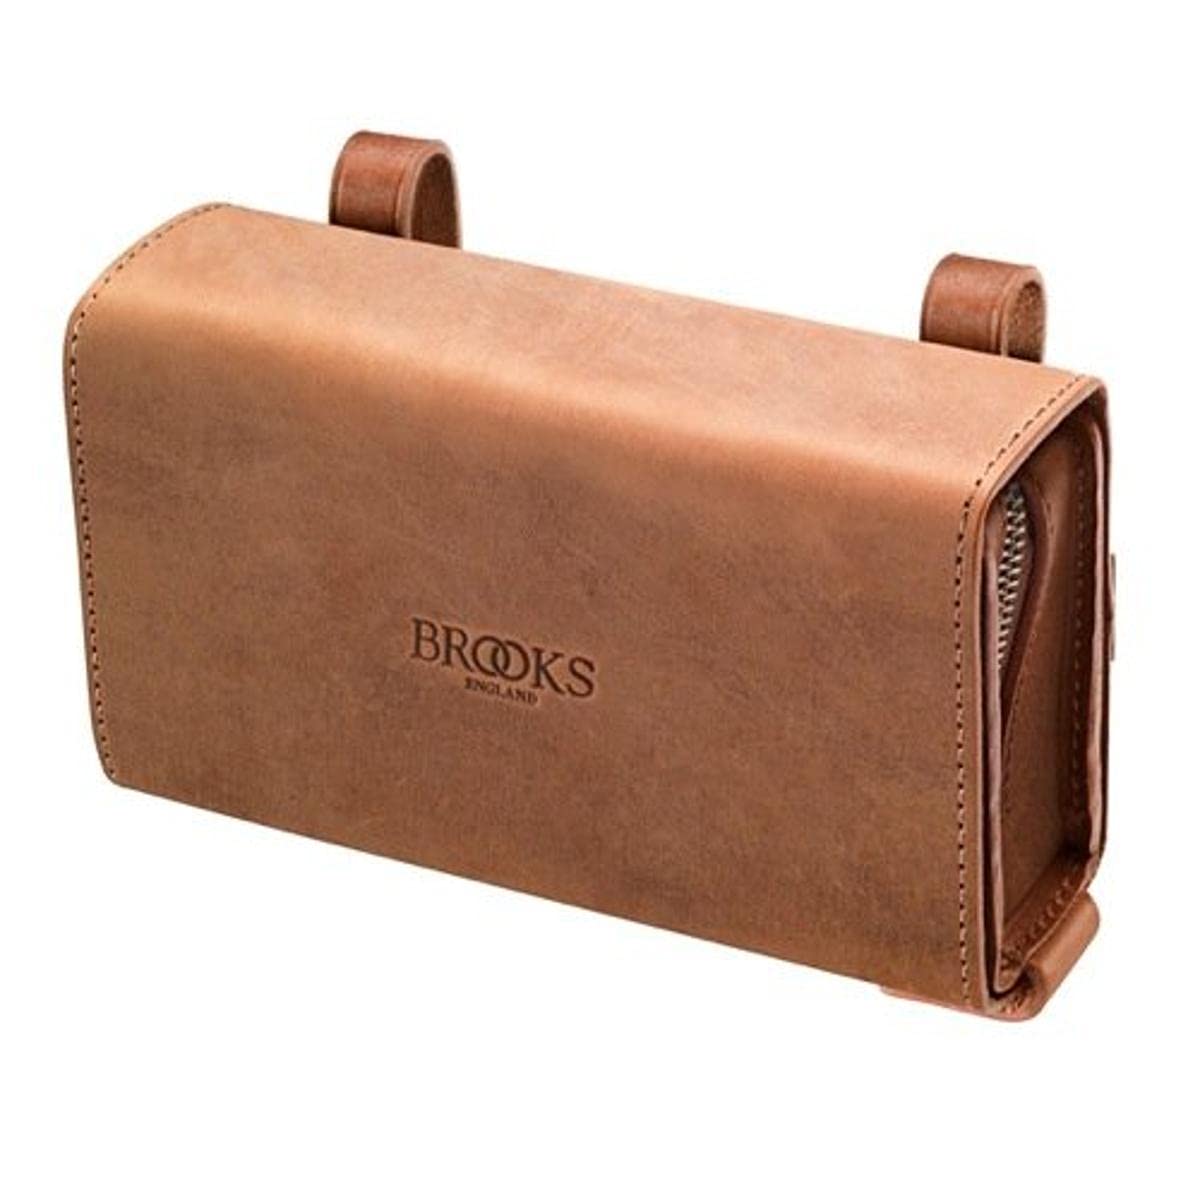 Brooks England Unisex – Erwachsene Aged D-Shaped Tool Bag, One Size